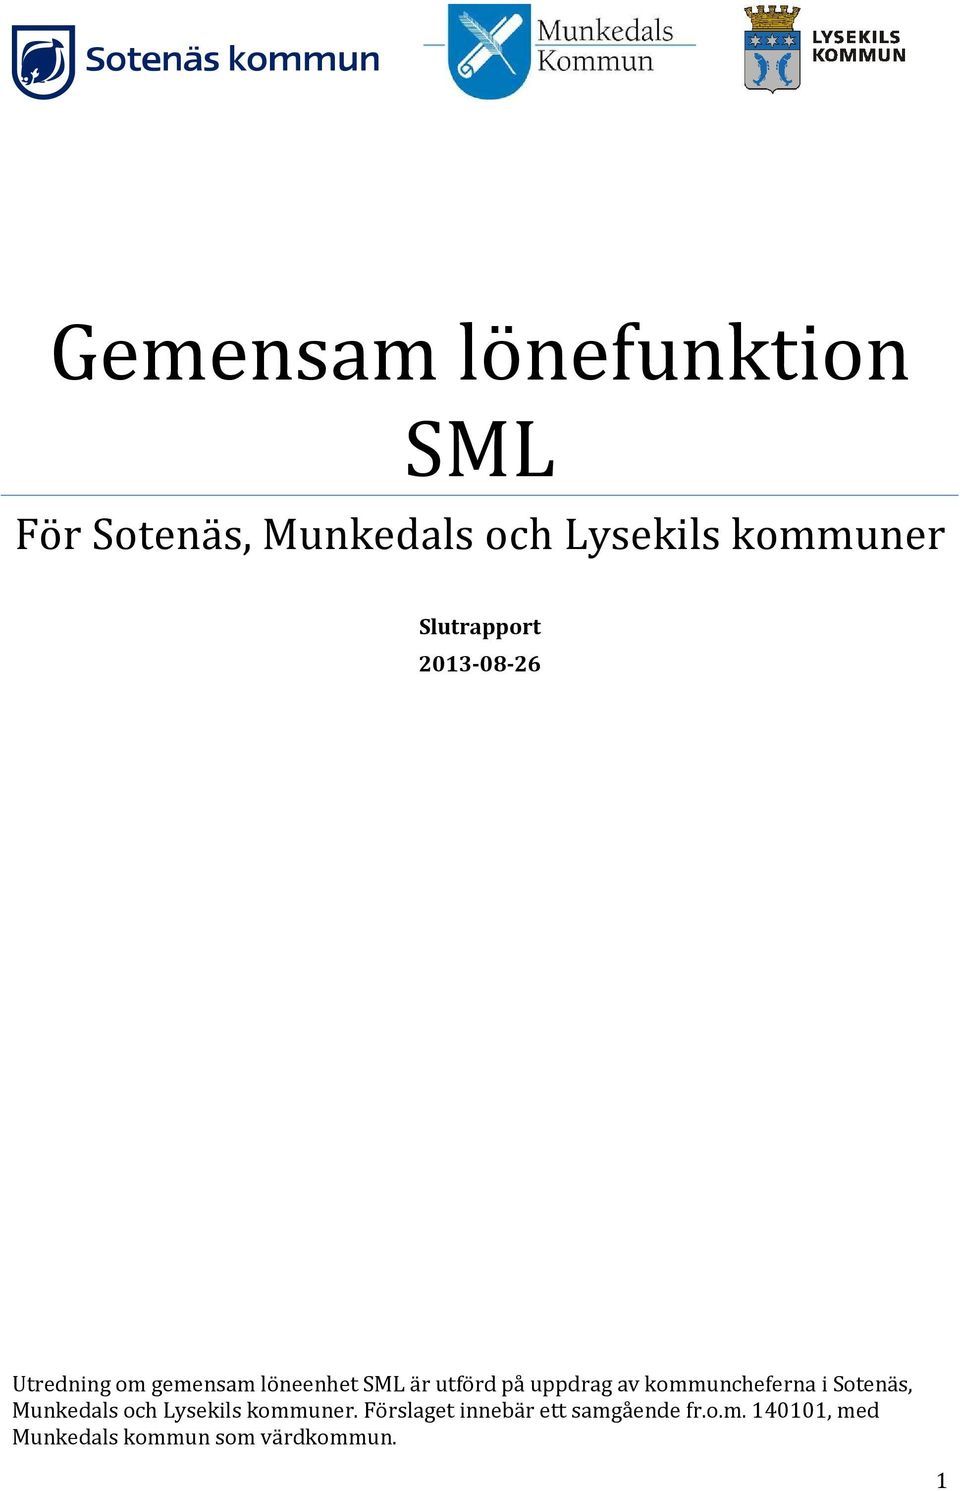 uppdrag av kommuncheferna i Sotenäs, Munkedals och Lysekils kommuner.